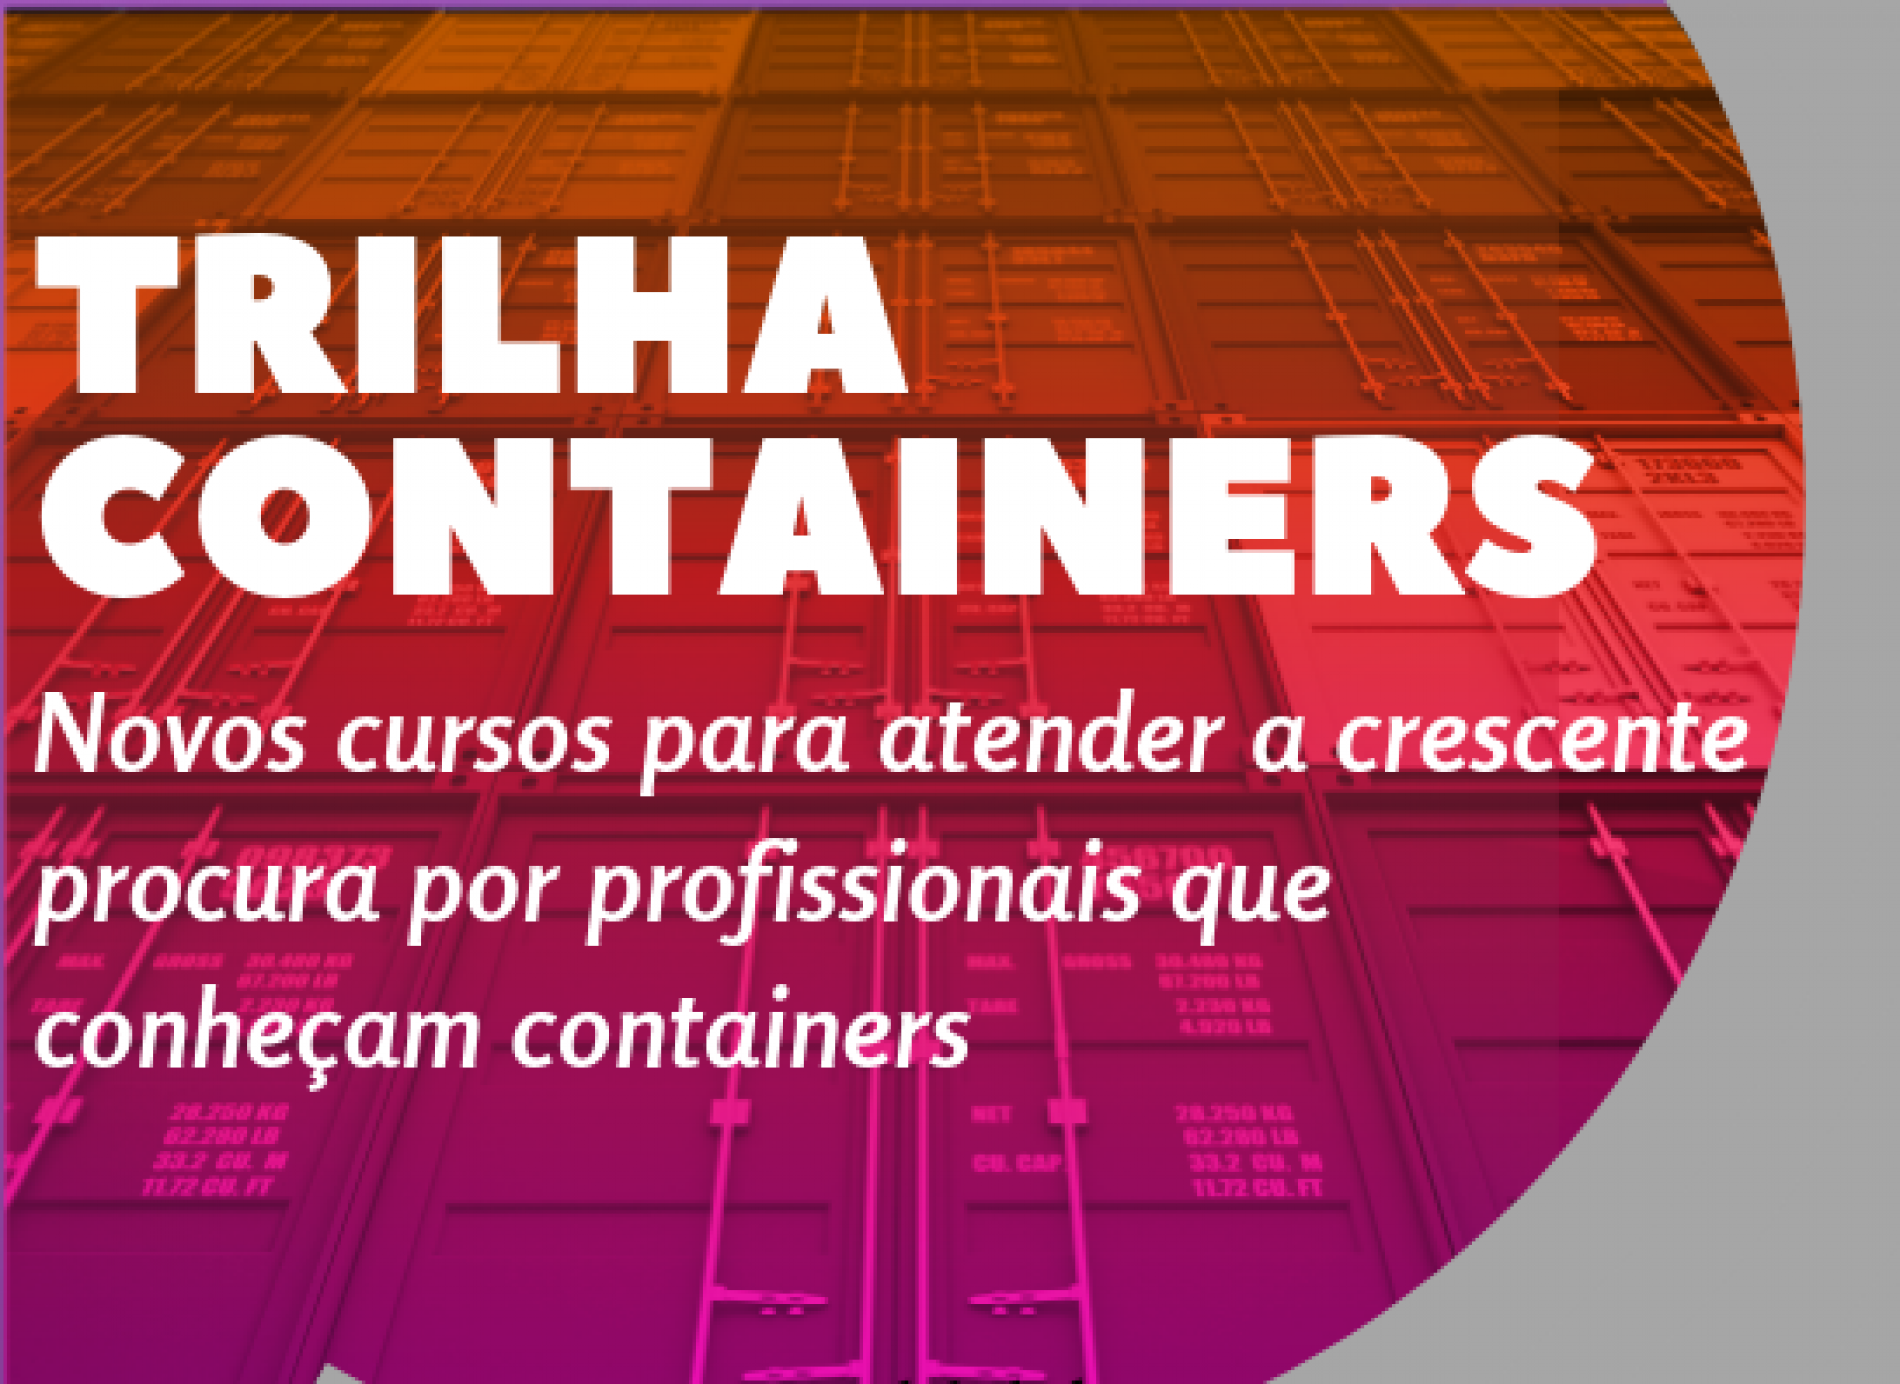 Cresce aceleradamente a procura por profissionais de TI que conheçam “containers”.